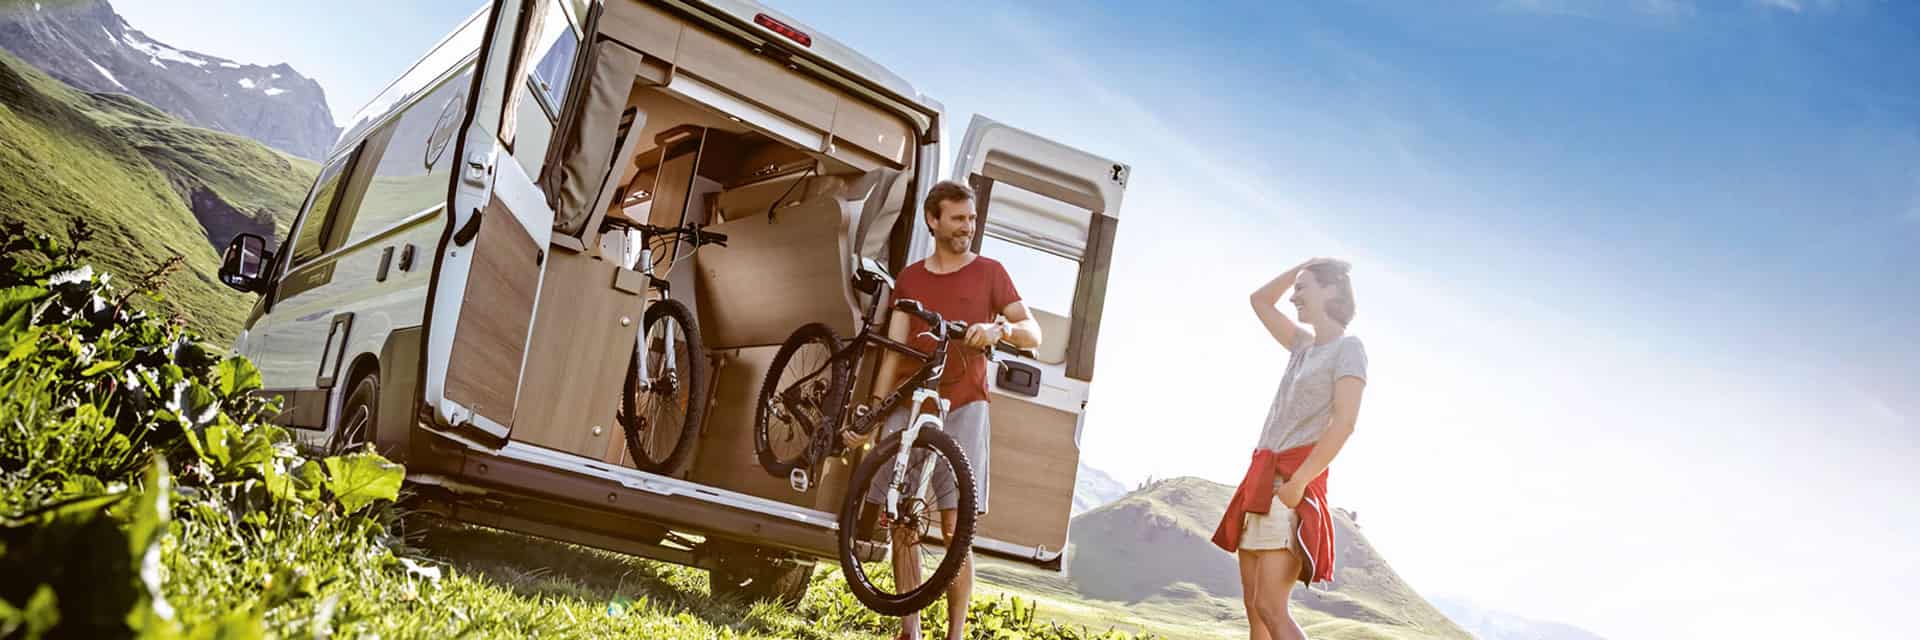 Wohnmobil mit 2 Personen und Fahrrädern